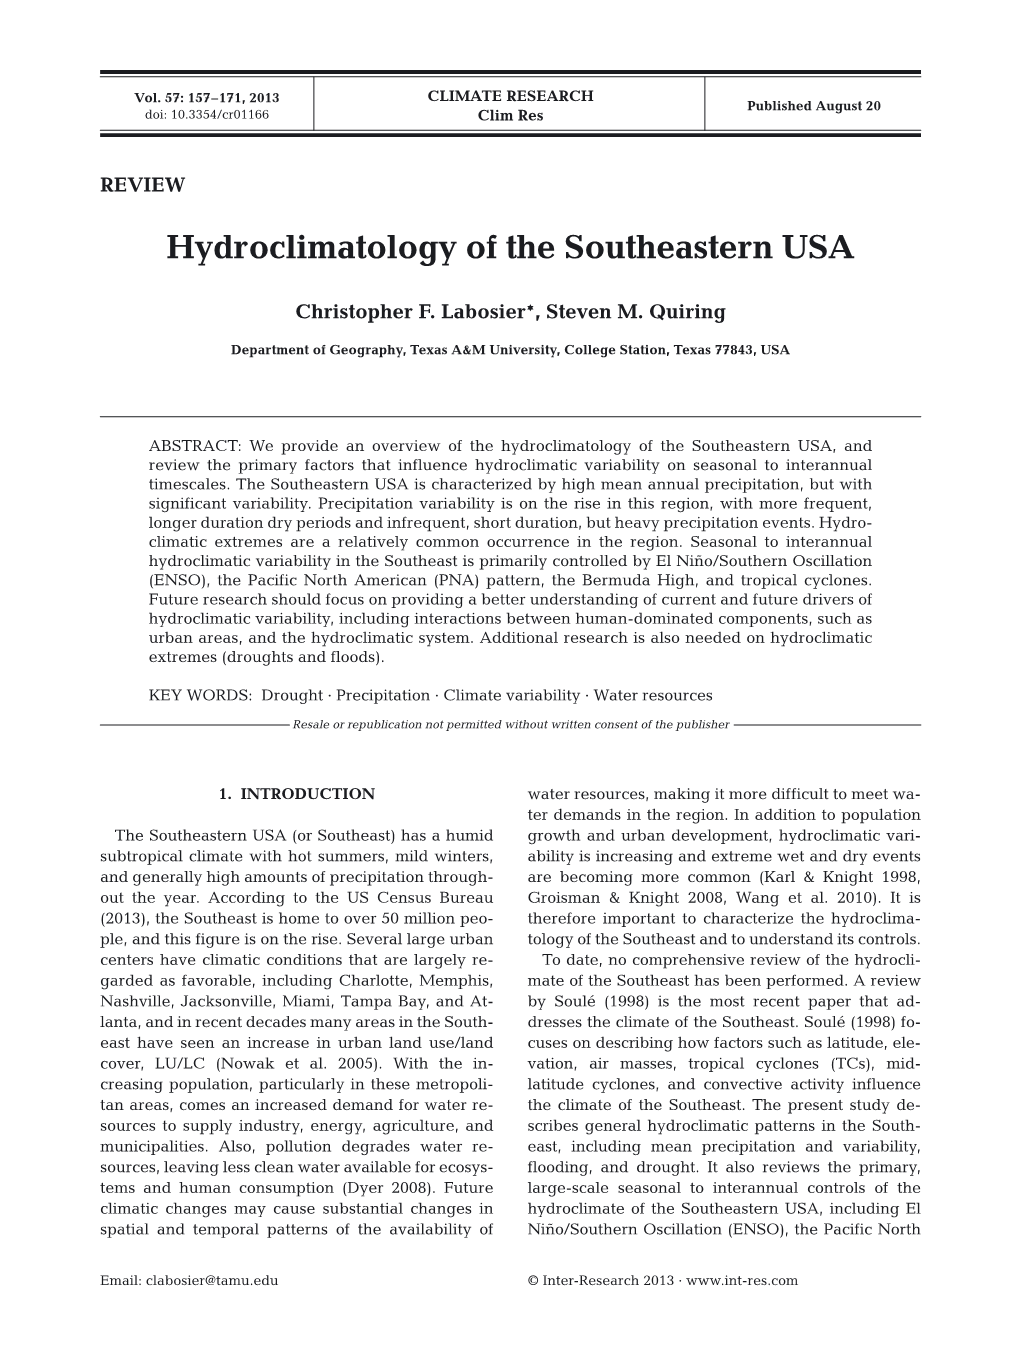 Hydroclimatology of the Southeastern USA